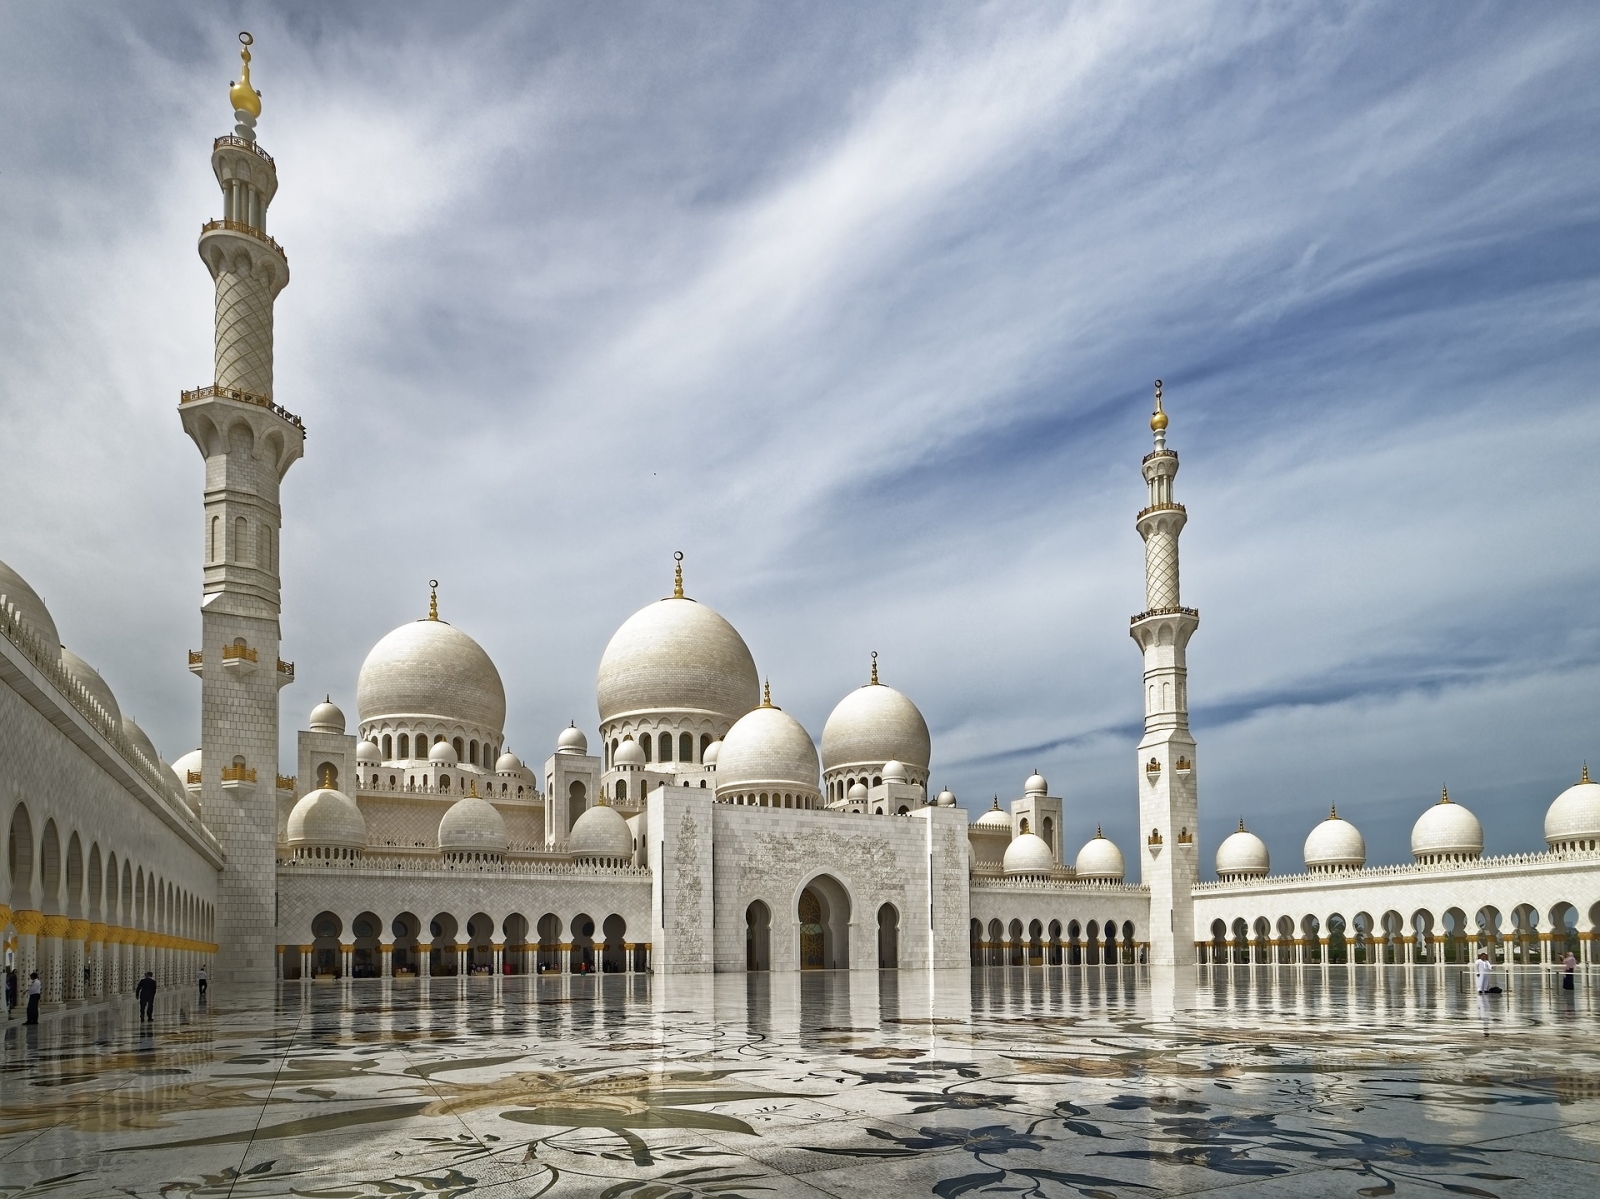 謝赫扎耶德大清真寺採用來自世界上10多個國家的建築材料以及工匠合力建設完成，工程壯觀而浩大，來到阿聯不能錯過。